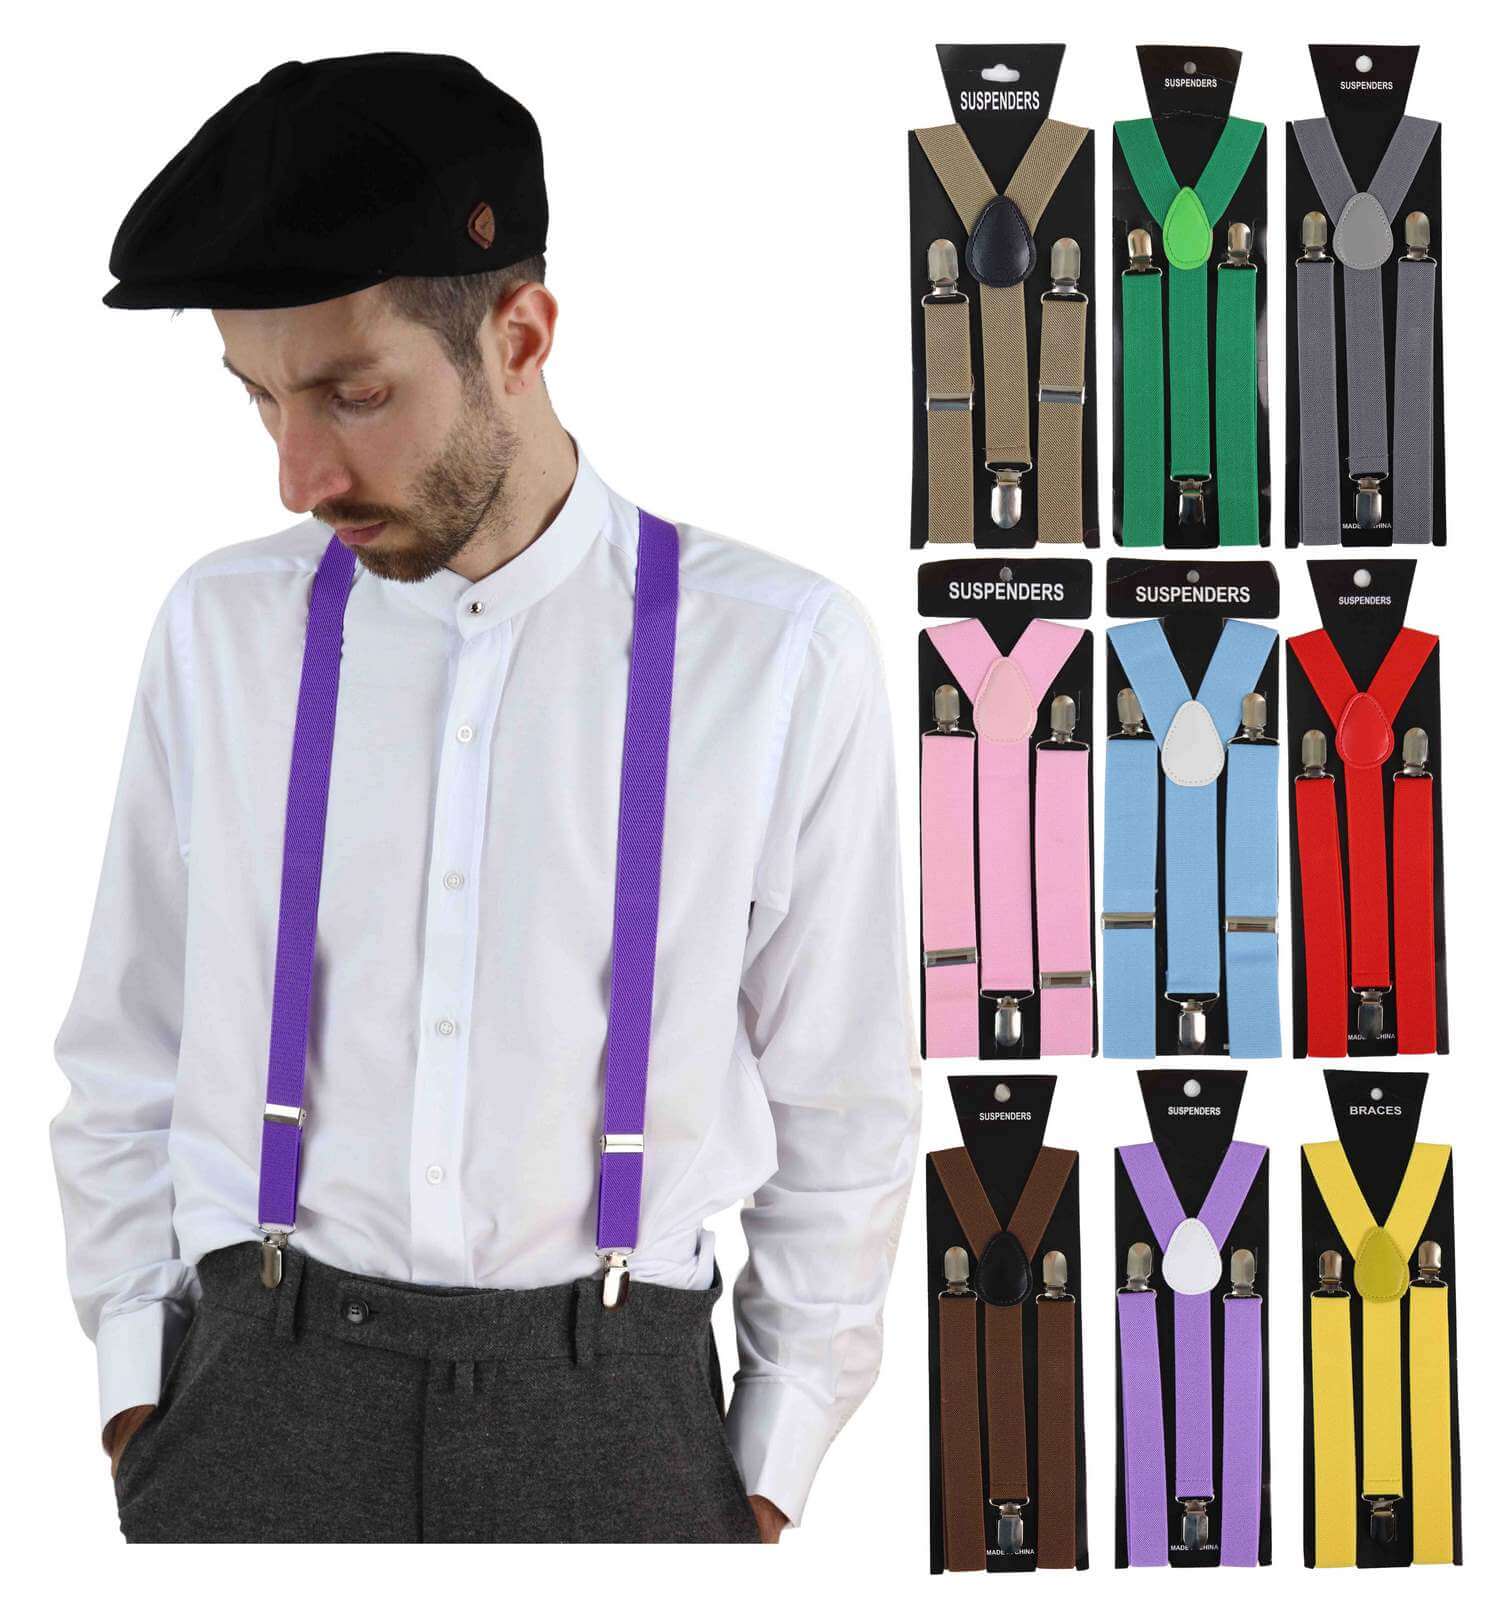 https://happygentleman.com/wp-content/uploads/2019/11/suspenders-mens-classic-trouser-suspenders-braces-all1.jpg